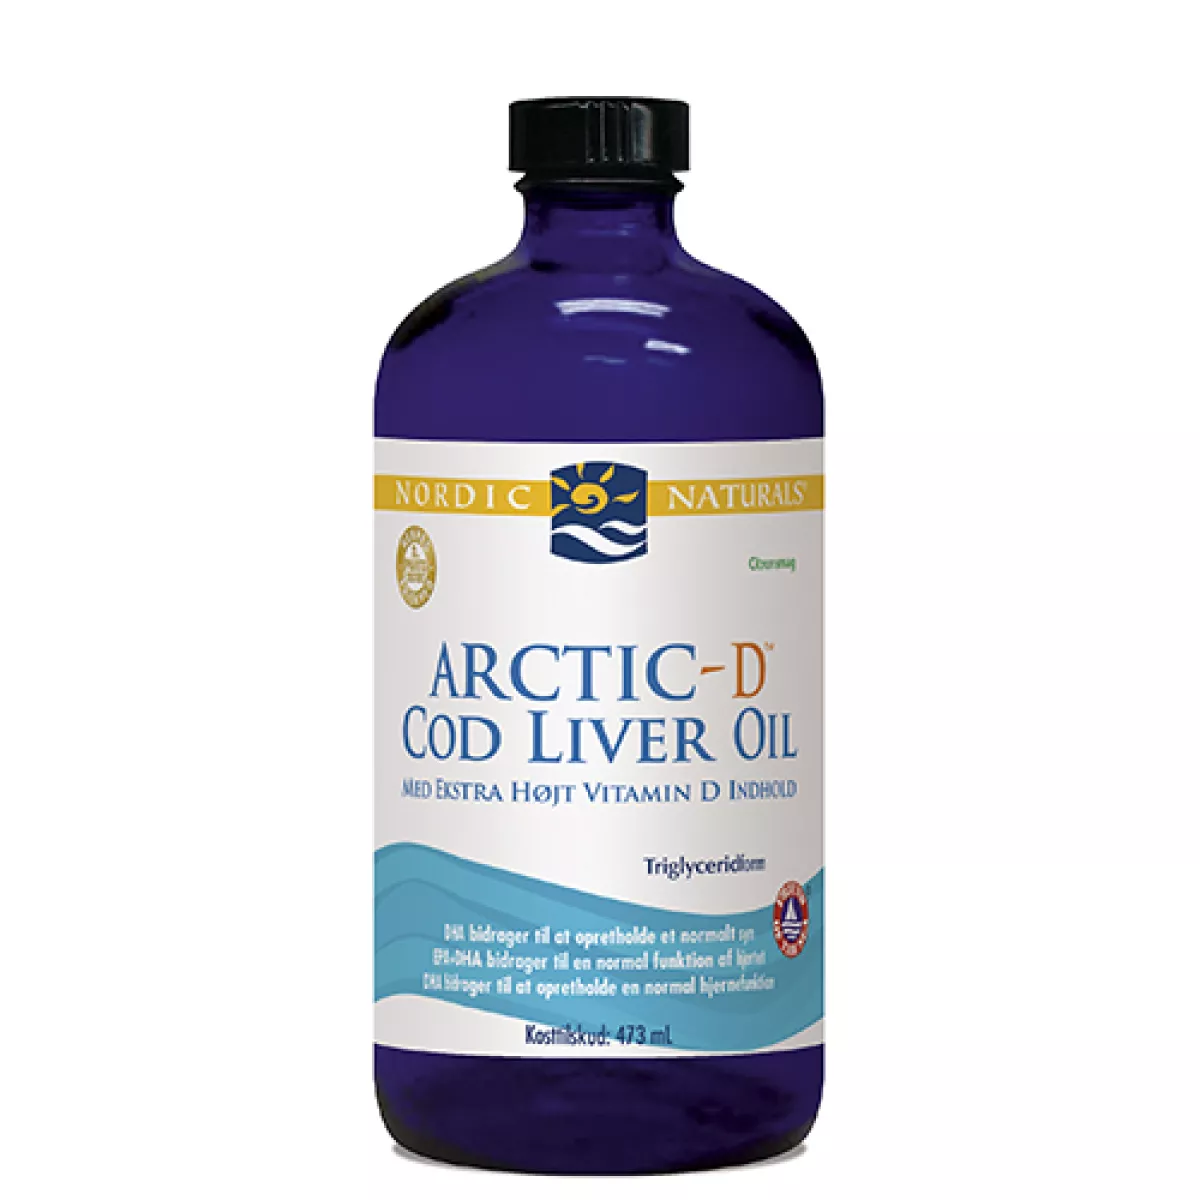 #3 - Nordic Naturals Cod Liver Oil + D m. citrus - 473 ml